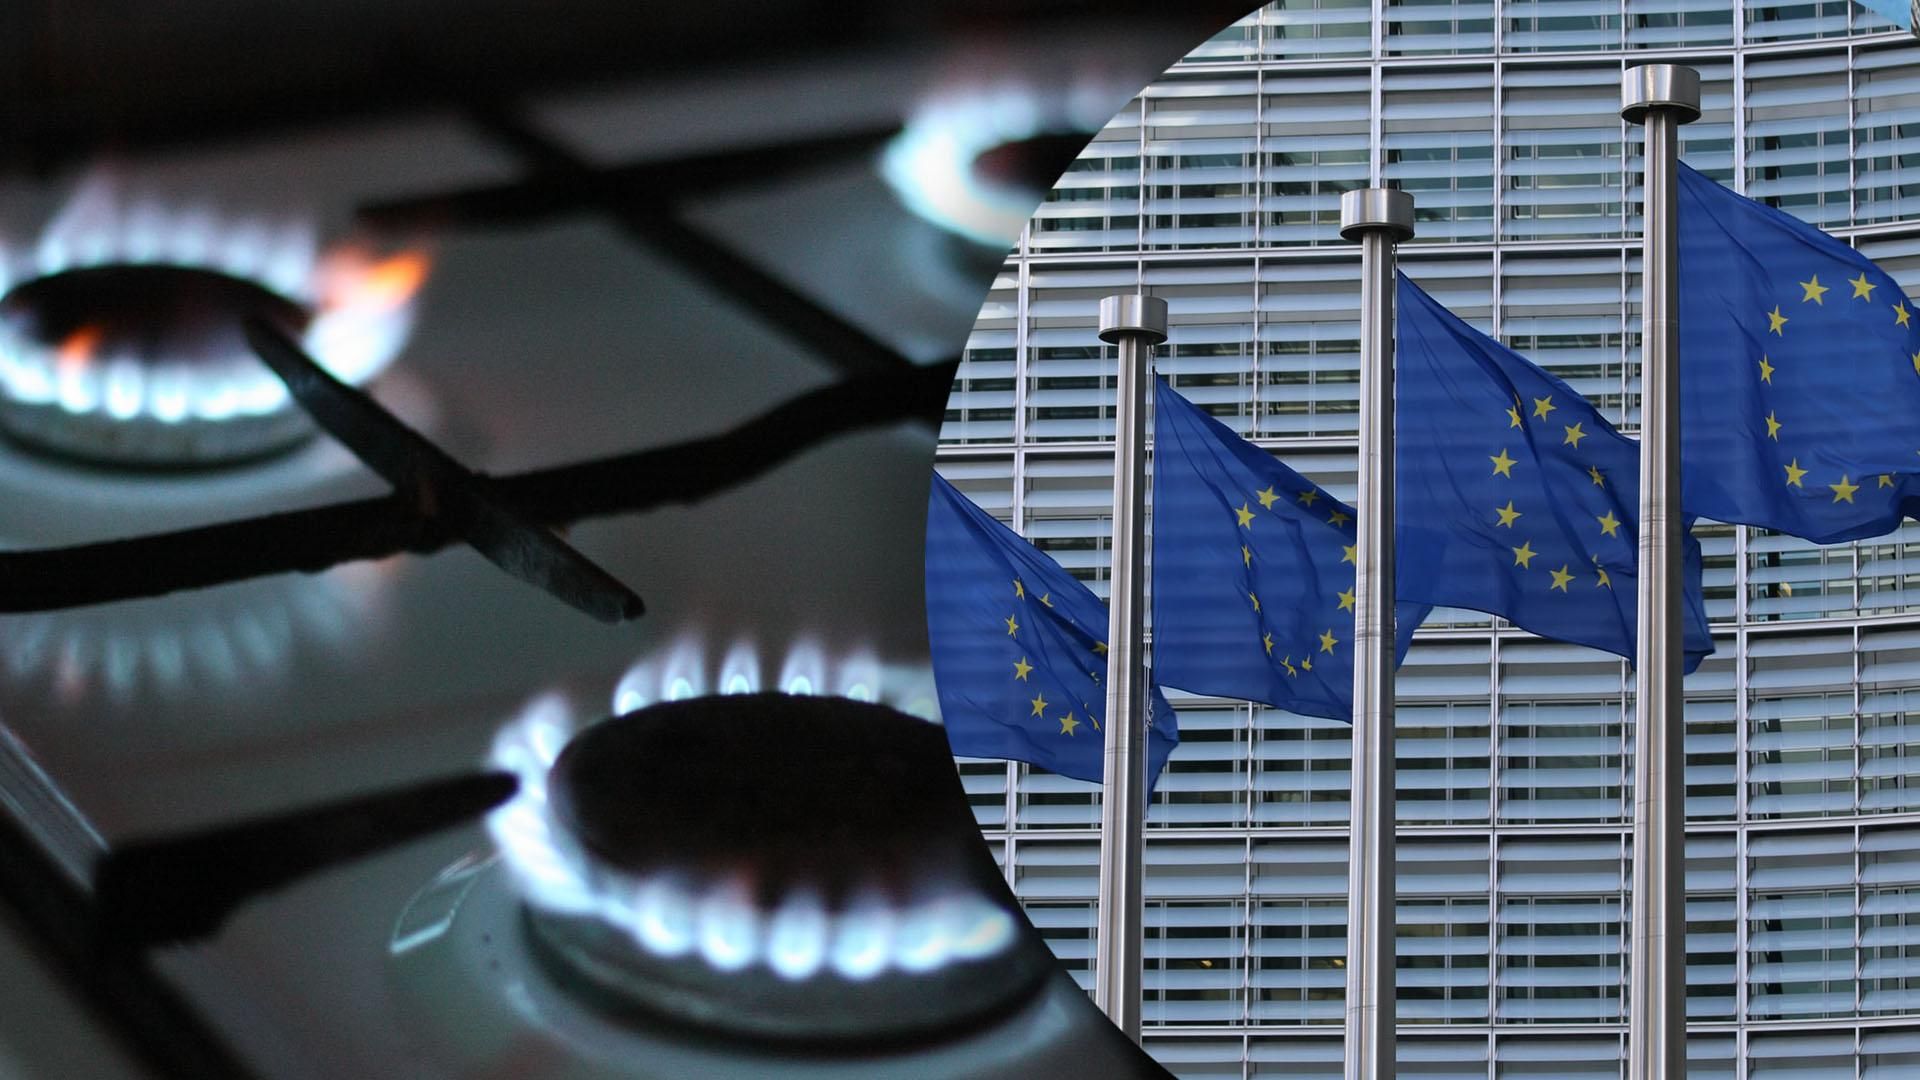 ЕС планирует обвинить Россию в использовании газа в качестве оружия, – СМИ